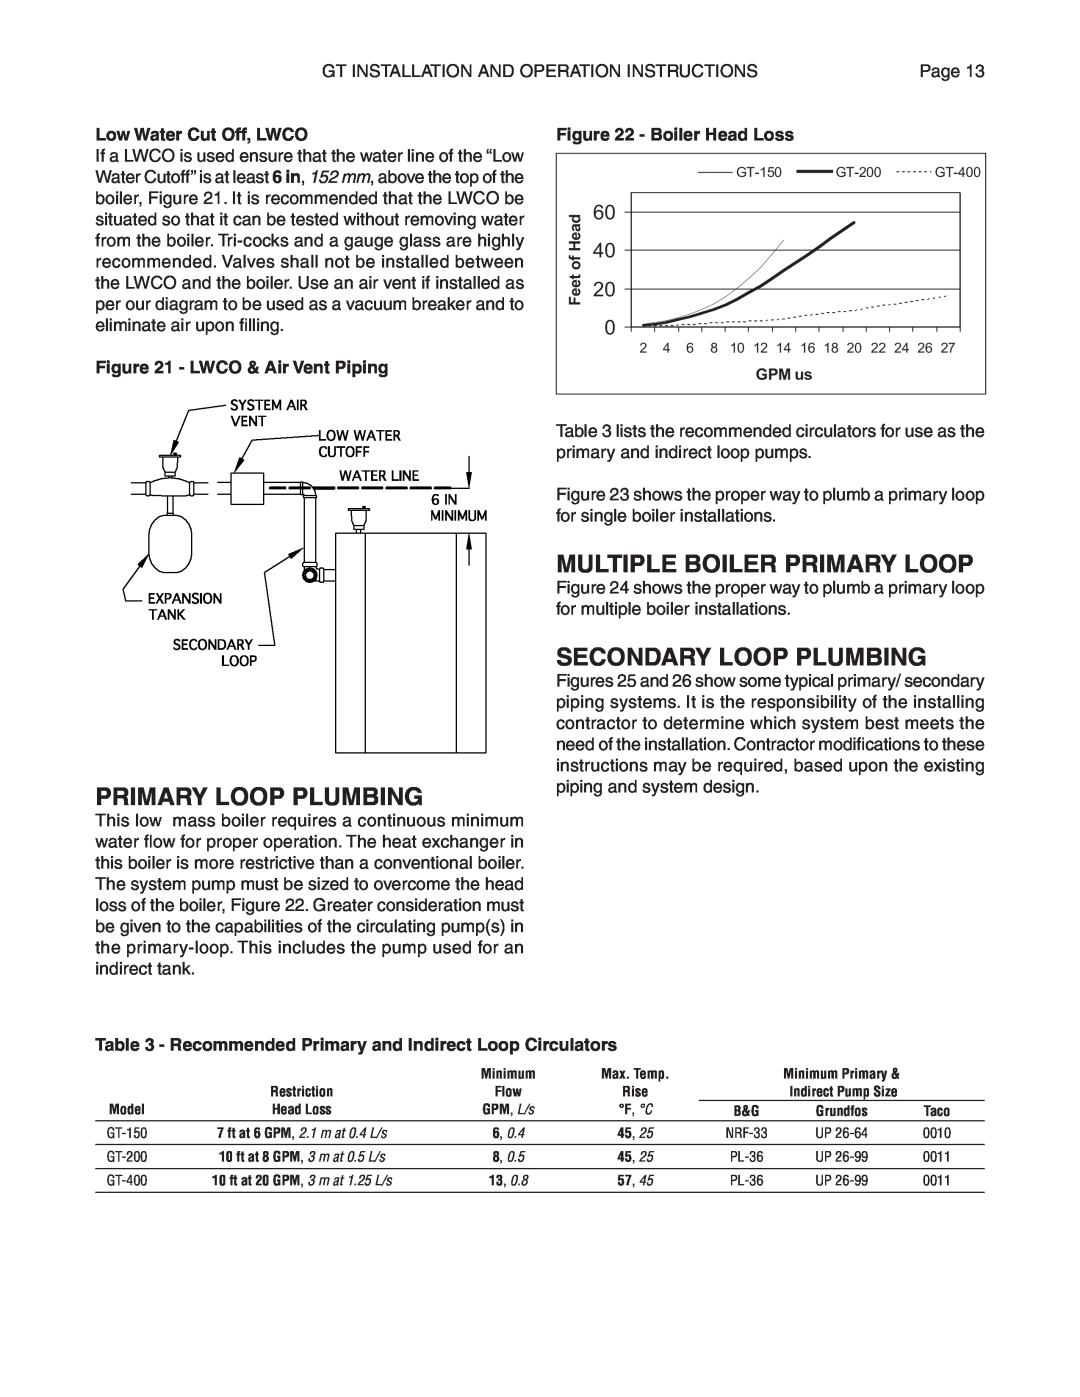 Smith Cast Iron Boilers GT Series manual Multiple Boiler Primary Loop, Primary Loop Plumbing, Secondary Loop Plumbing 